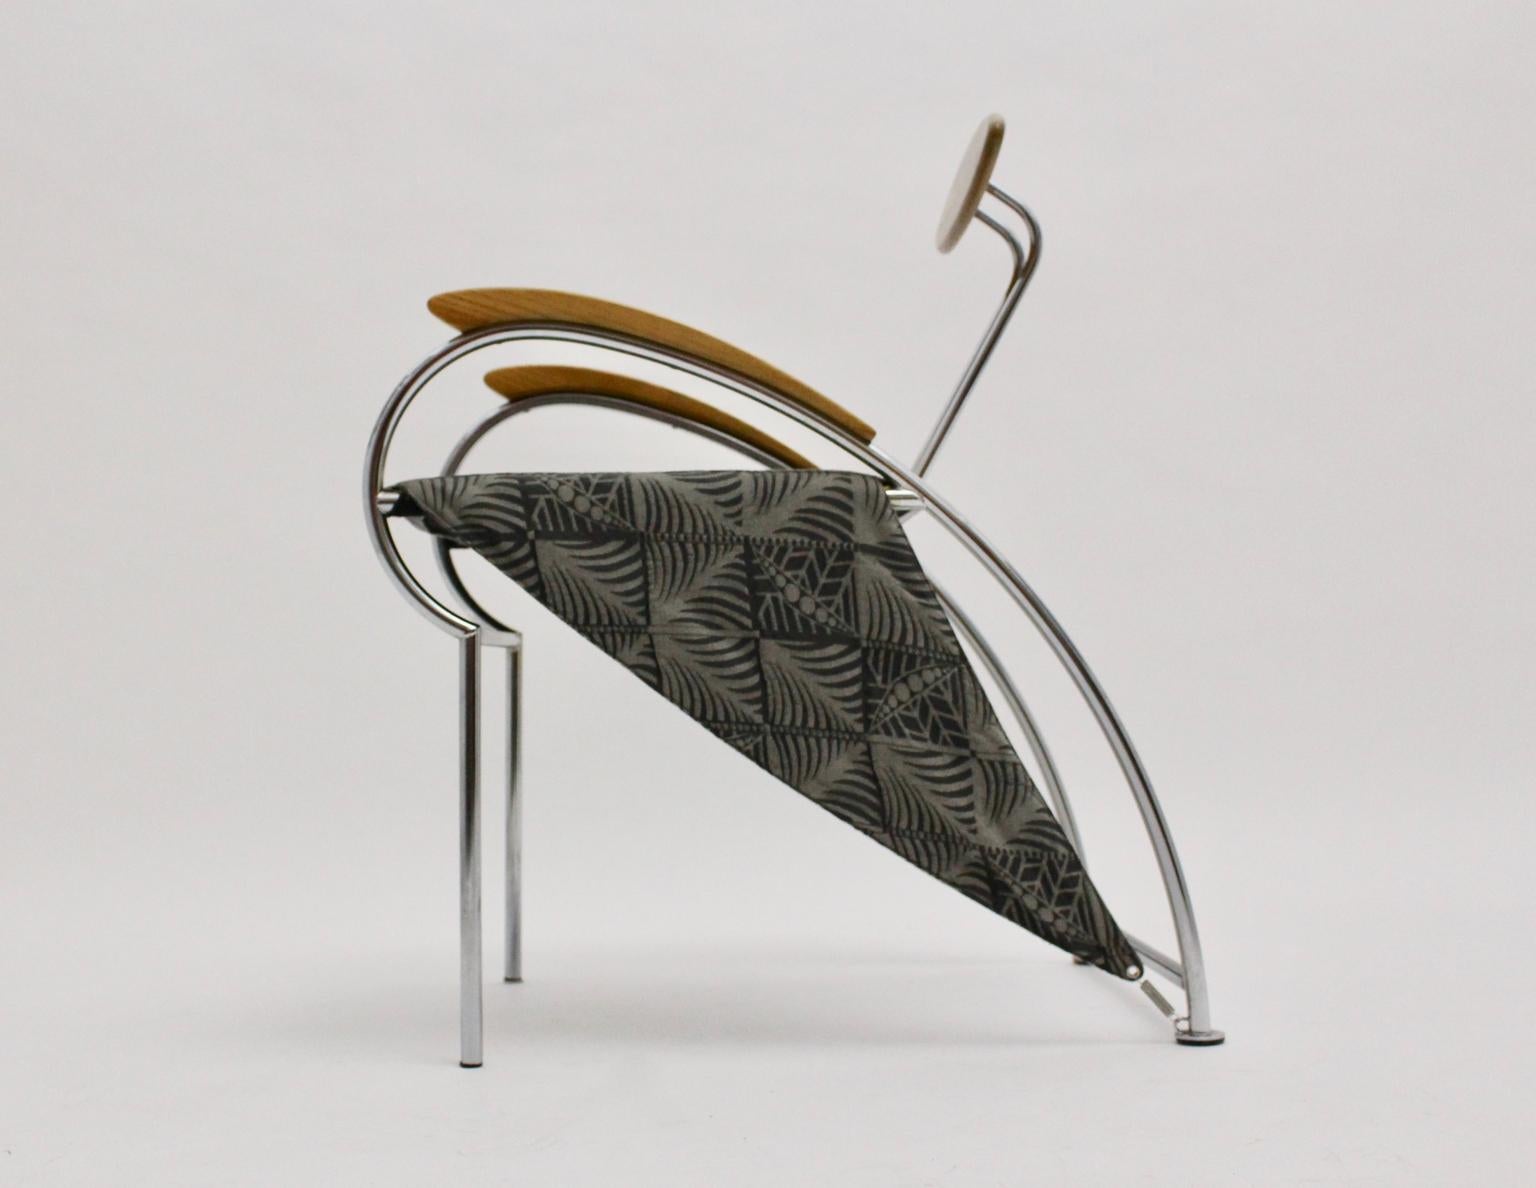 Ensemble postmoderne vintage de 4 fauteuils de salle à manger, qui ont été conçus par Massimo Iosa Ghini 1988 pour Moroso, Italie.
Massimo Iosa Ghini (1959 à Bologne) est un architecte et designer italien populaire et, depuis 1985, membre du groupe